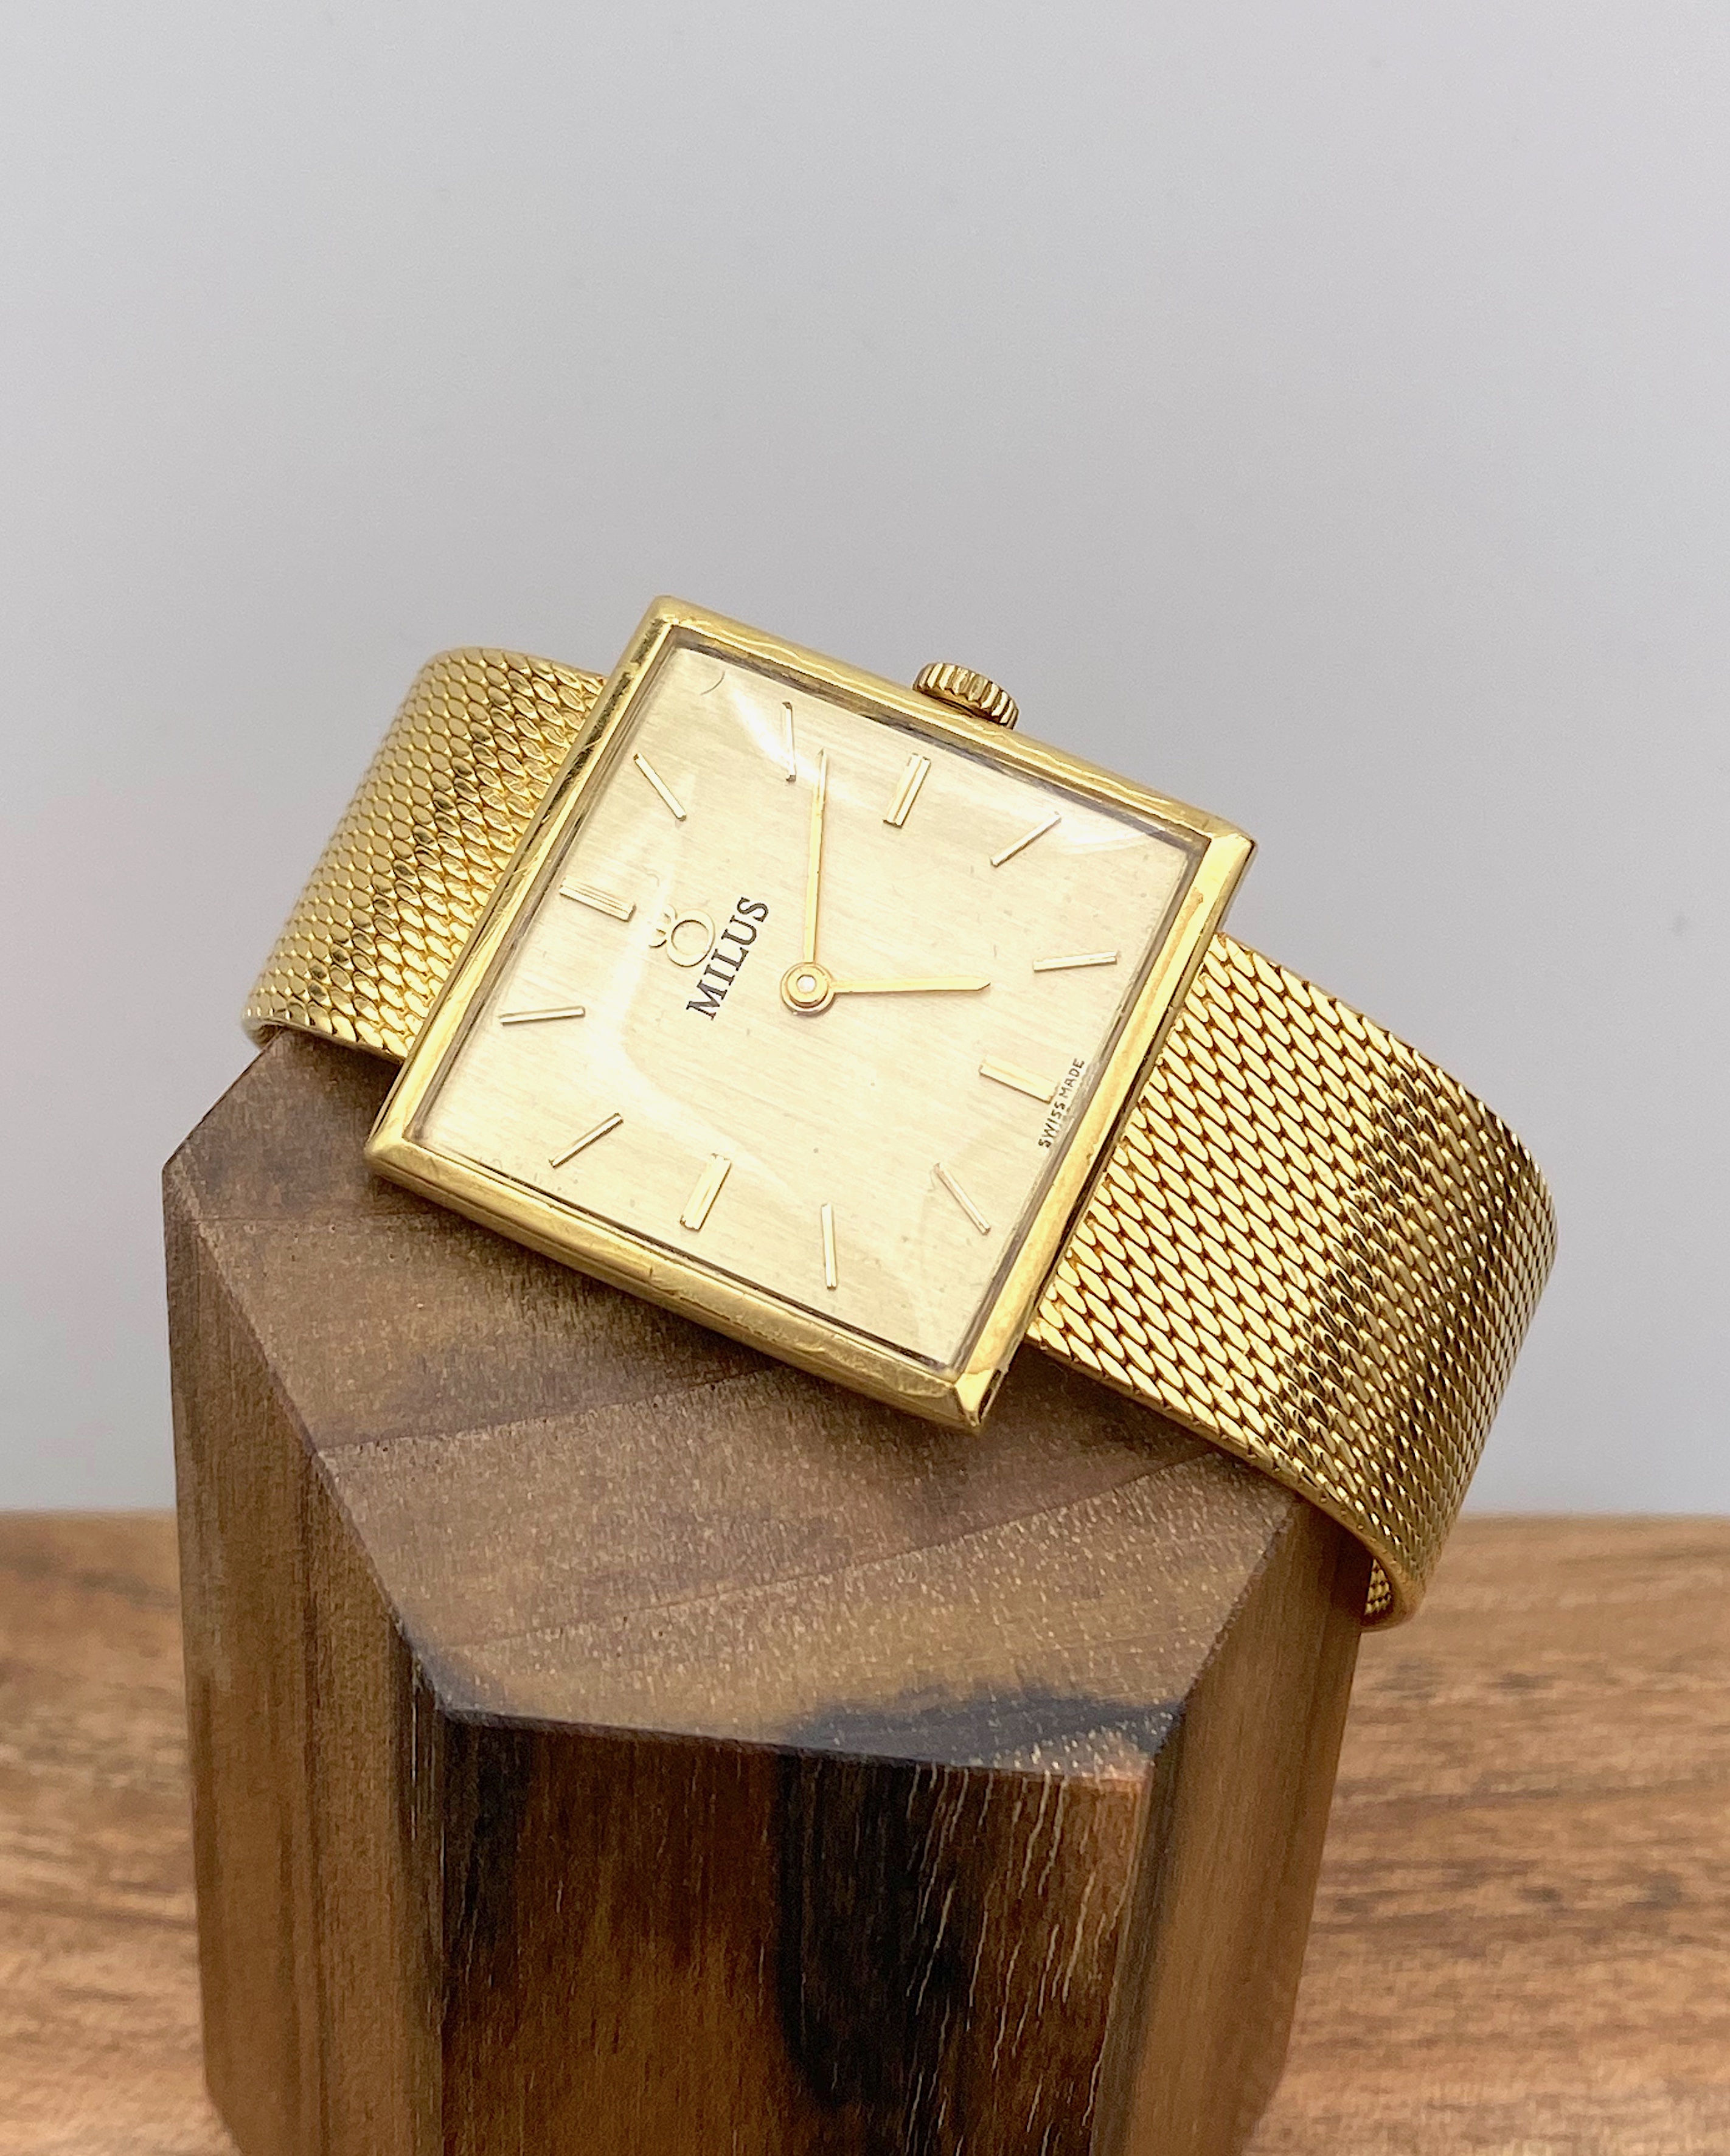 Men's wrist watch Milus in 750 gold